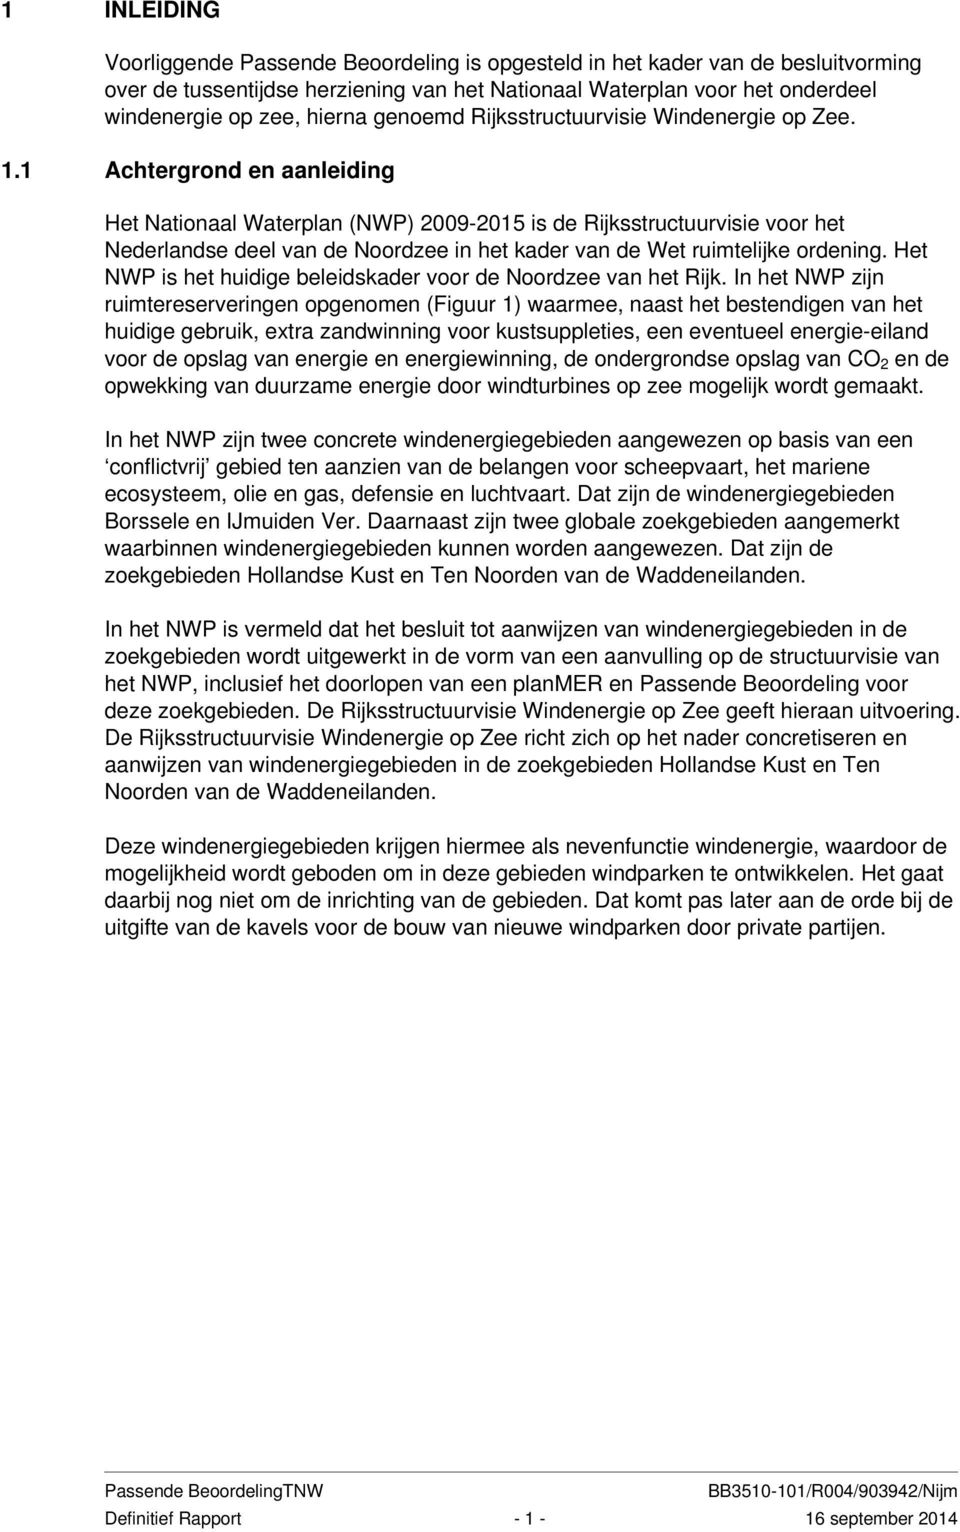 1 Achtergrond en aanleiding Het Nationaal Waterplan (NWP) 2009-2015 is de Rijksstructuurvisie voor het Nederlandse deel van de Noordzee in het kader van de Wet ruimtelijke ordening.